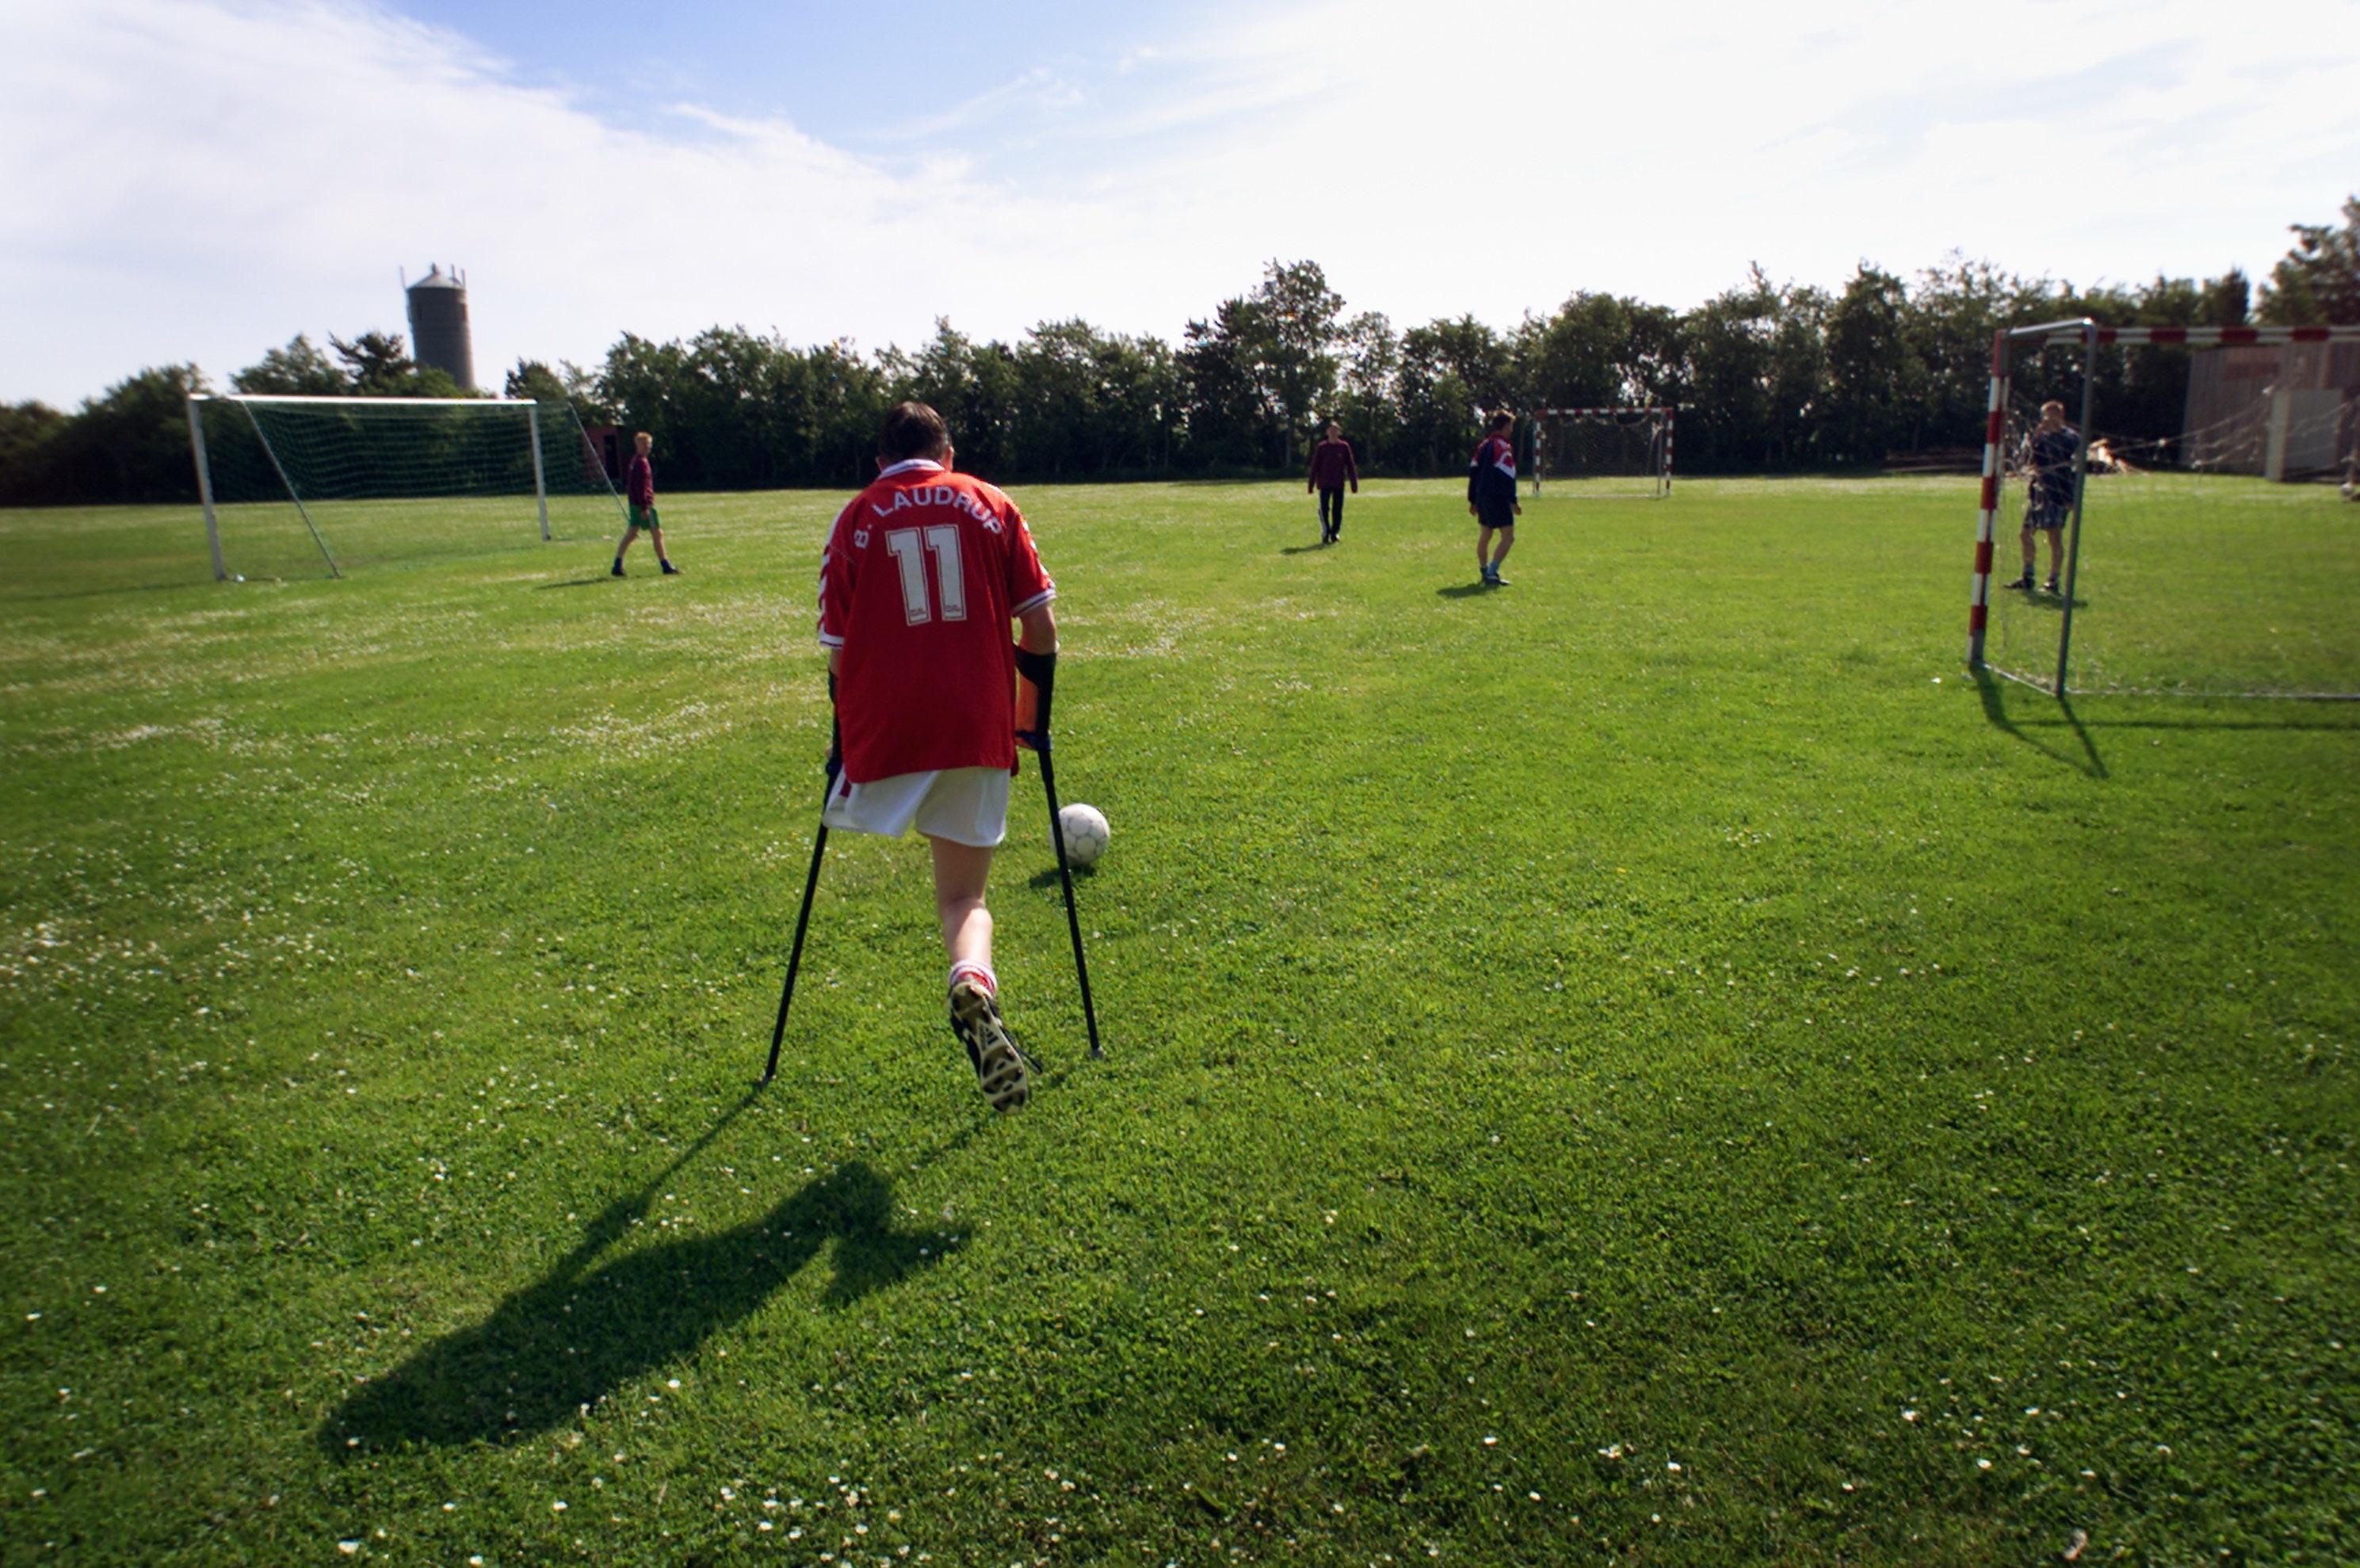 Der spilles fodbold på Onsild Idræts efterskole. Foto: Claus Bonnerup/Polfoto